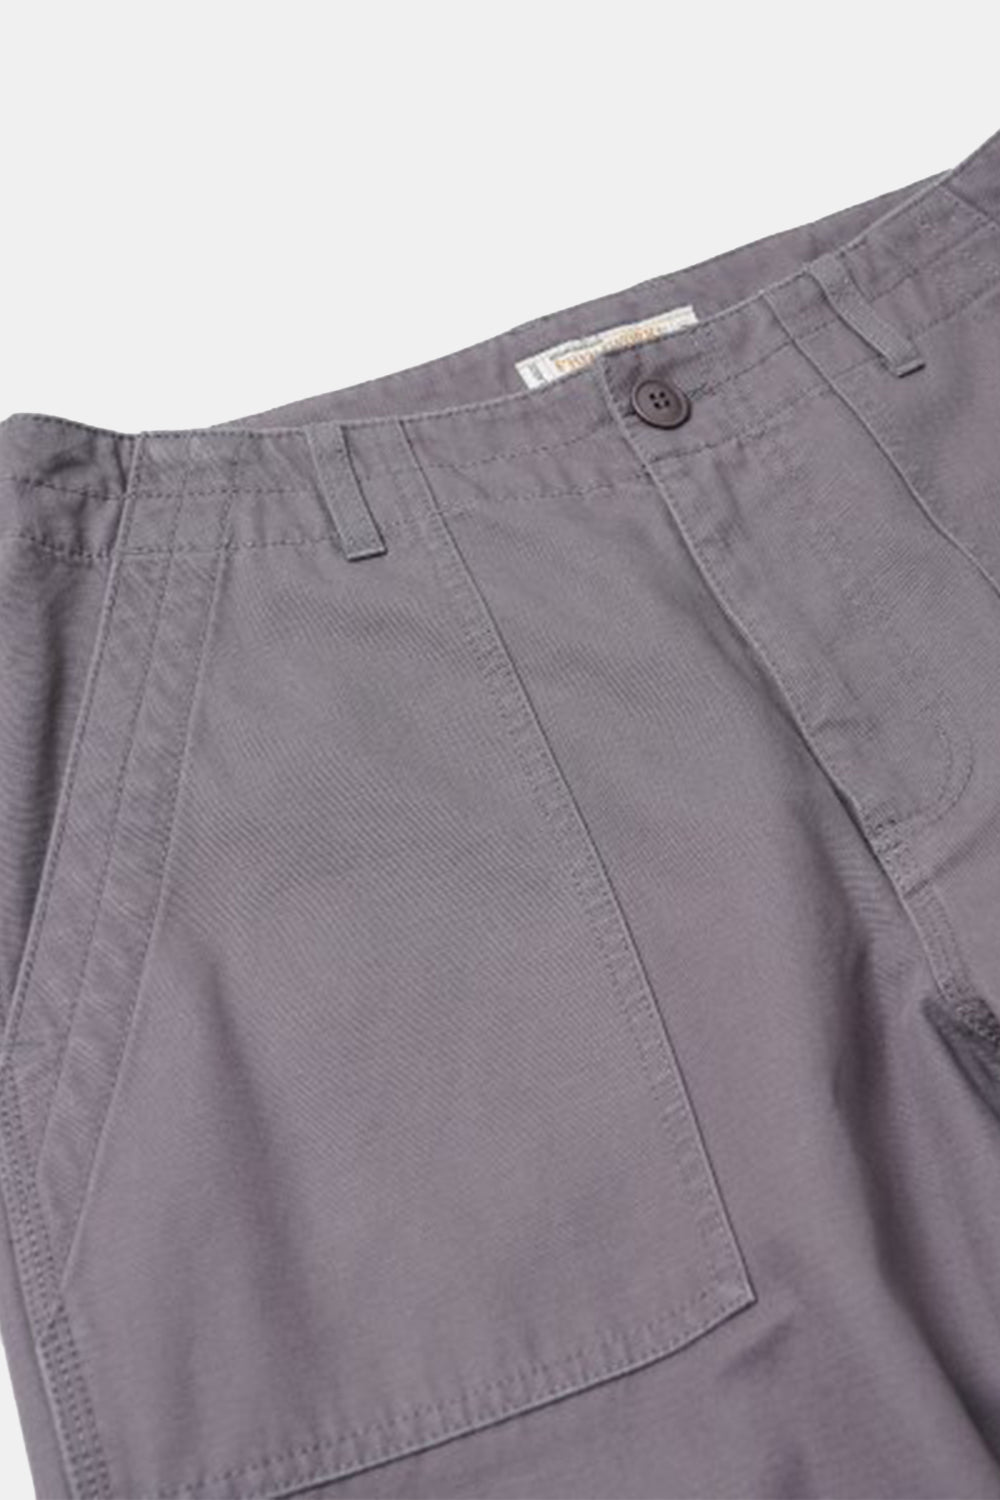 Frizmworks Jungle Cloth Fatigue Pants (Ash Violet)